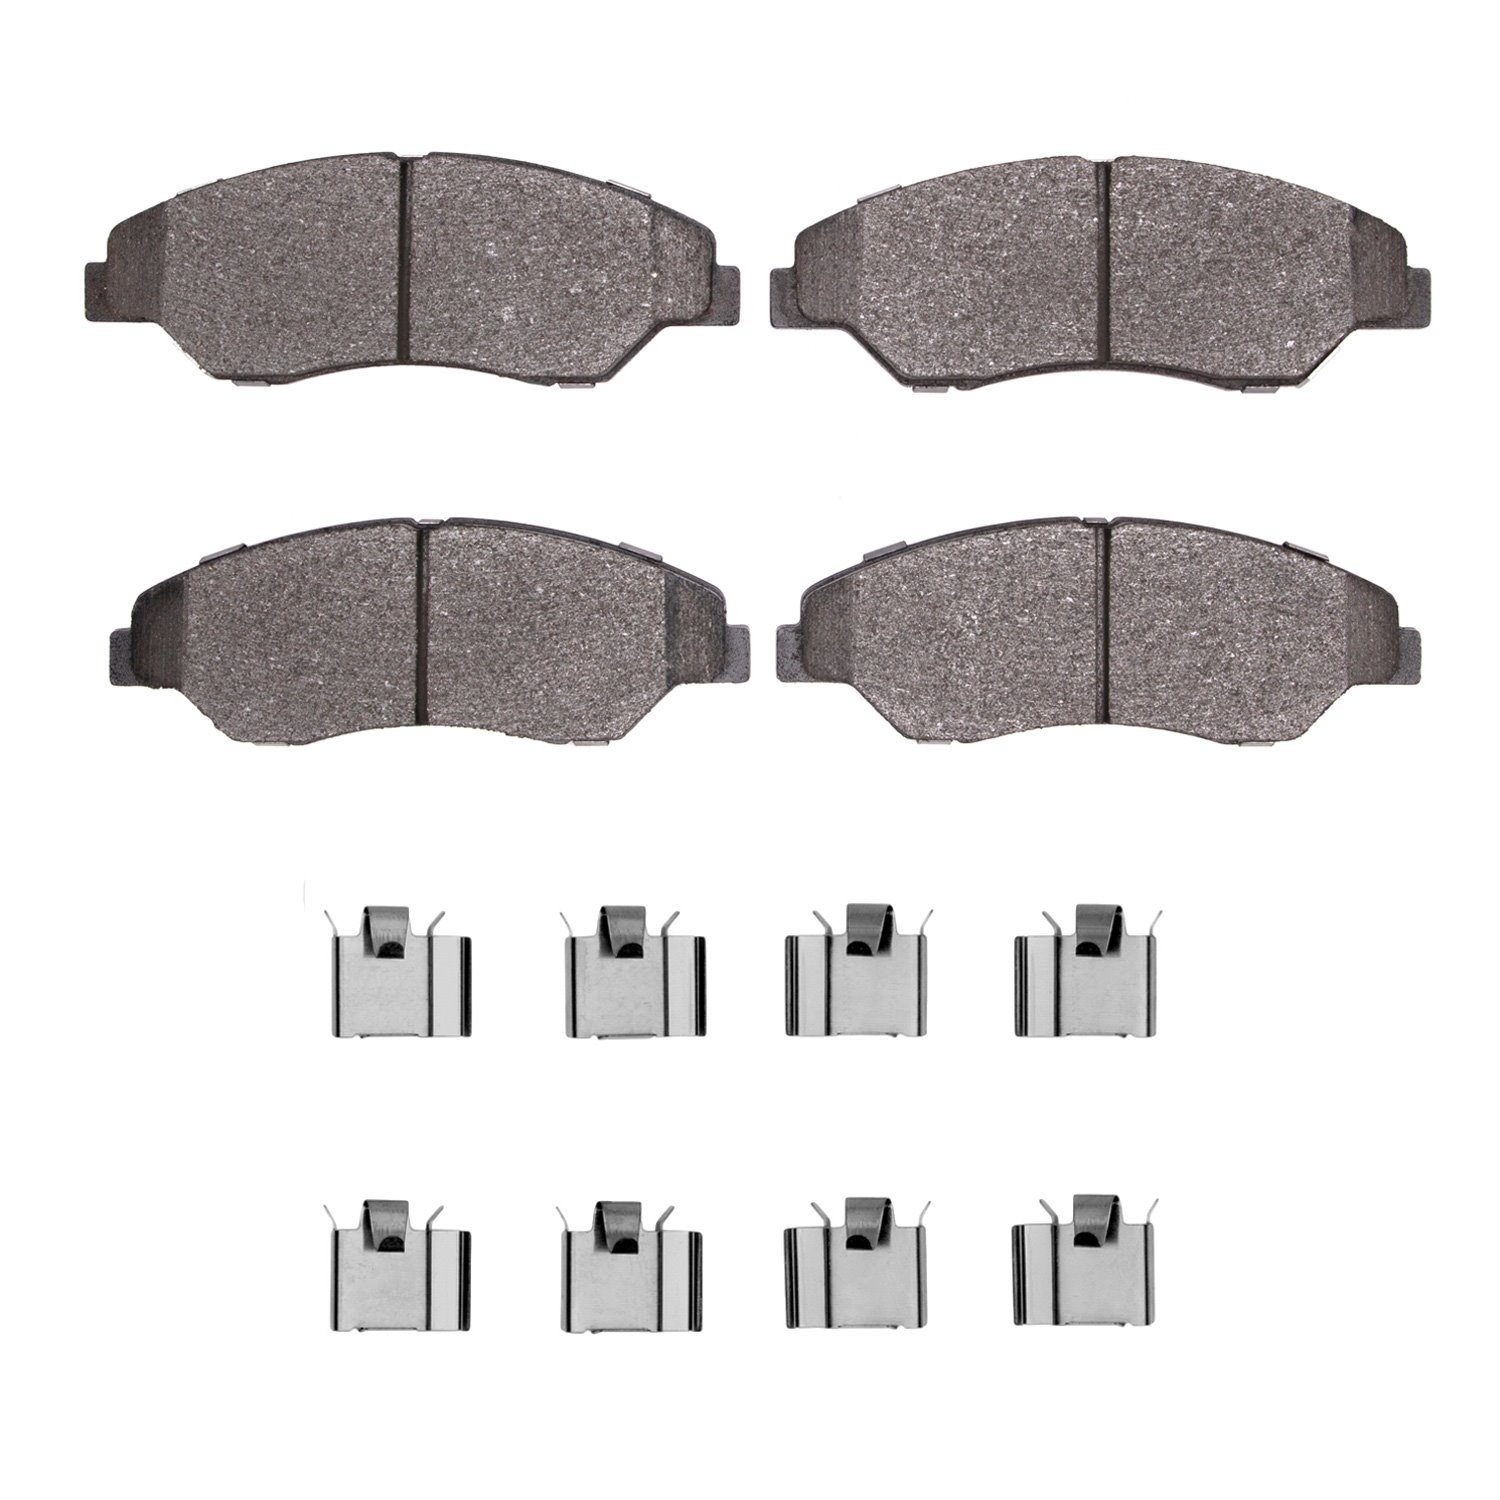 1311-0774-01 3000-Series Semi-Metallic Brake Pads & Hardware Kit, 1998-2002 Kia/Hyundai/Genesis, Position: Front